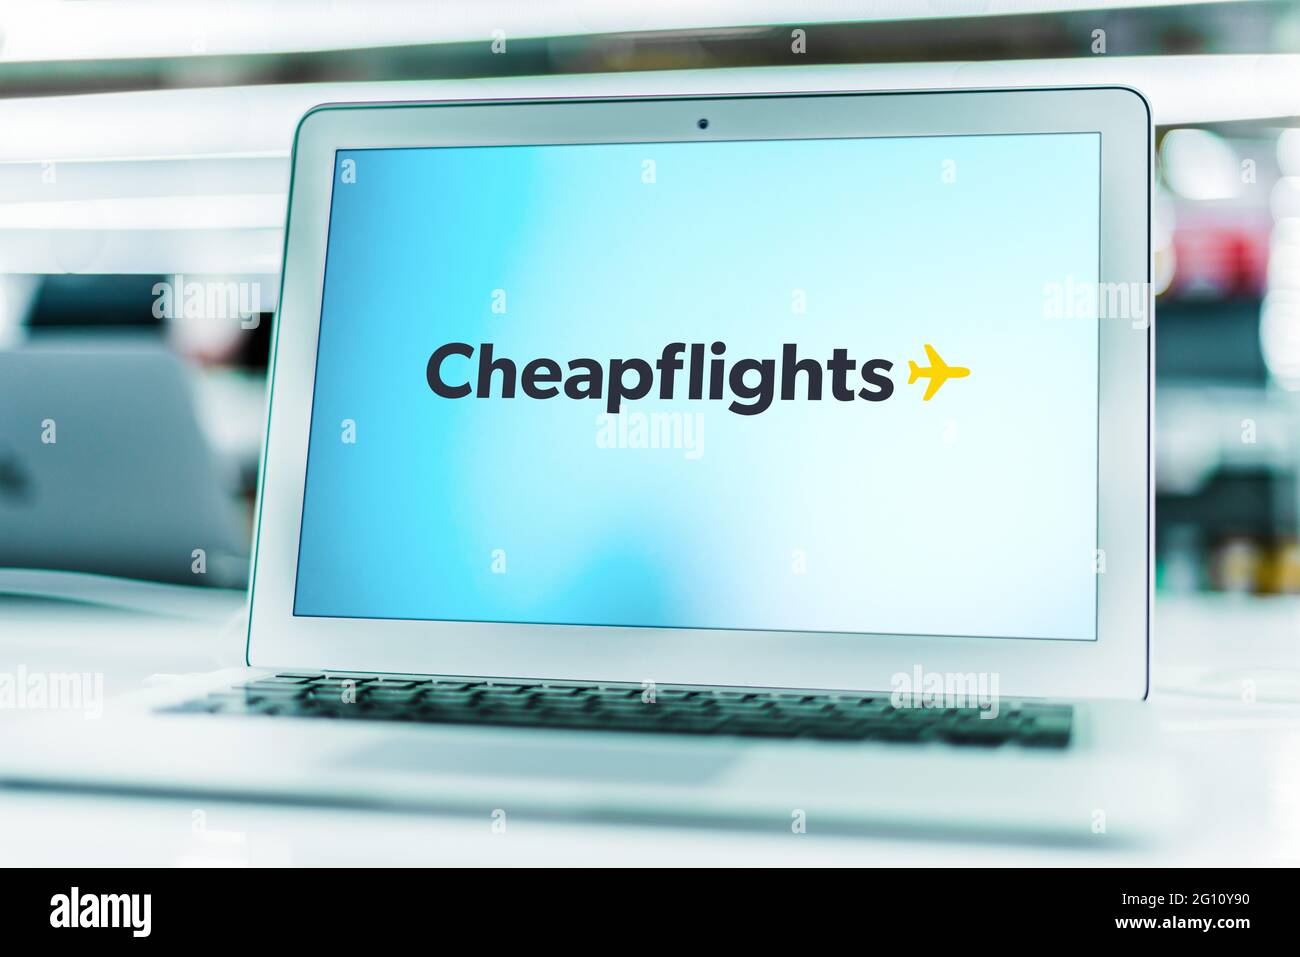 POZNAN, POL - 1 MAI 2021 : ordinateur portable affichant le logo de Cheapflights, un moteur de métarecherche de tarifs de voyage, qui fait partie de la filiale de Booki en Kayak.com Banque D'Images